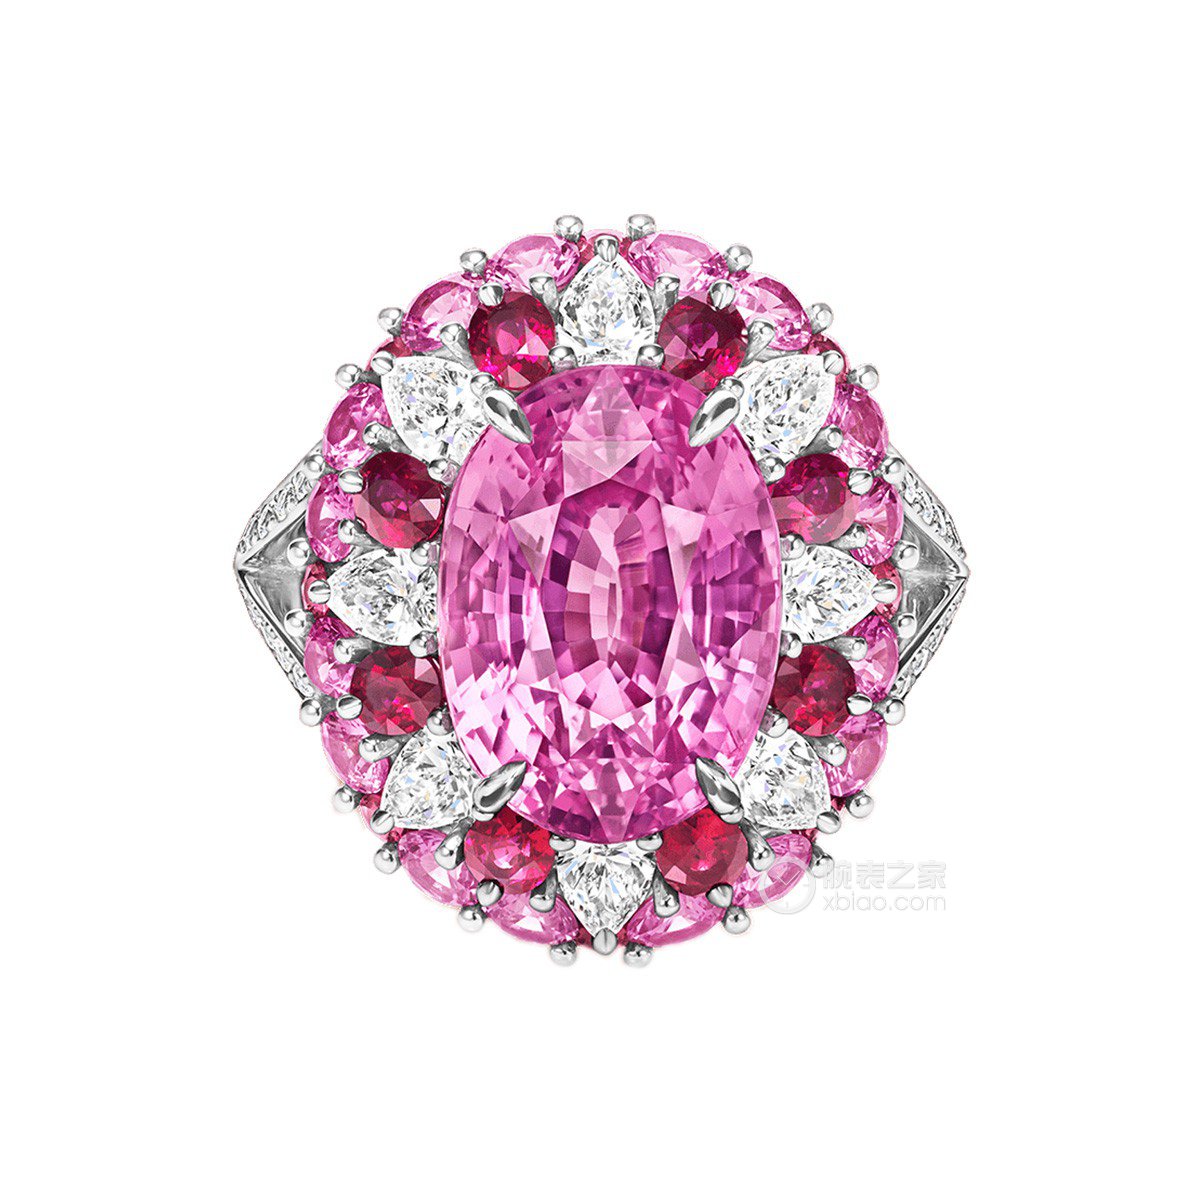 海瑞温斯顿Winston Candy高级珠宝系列粉色蓝宝石配红宝石和钻石戒指戒指